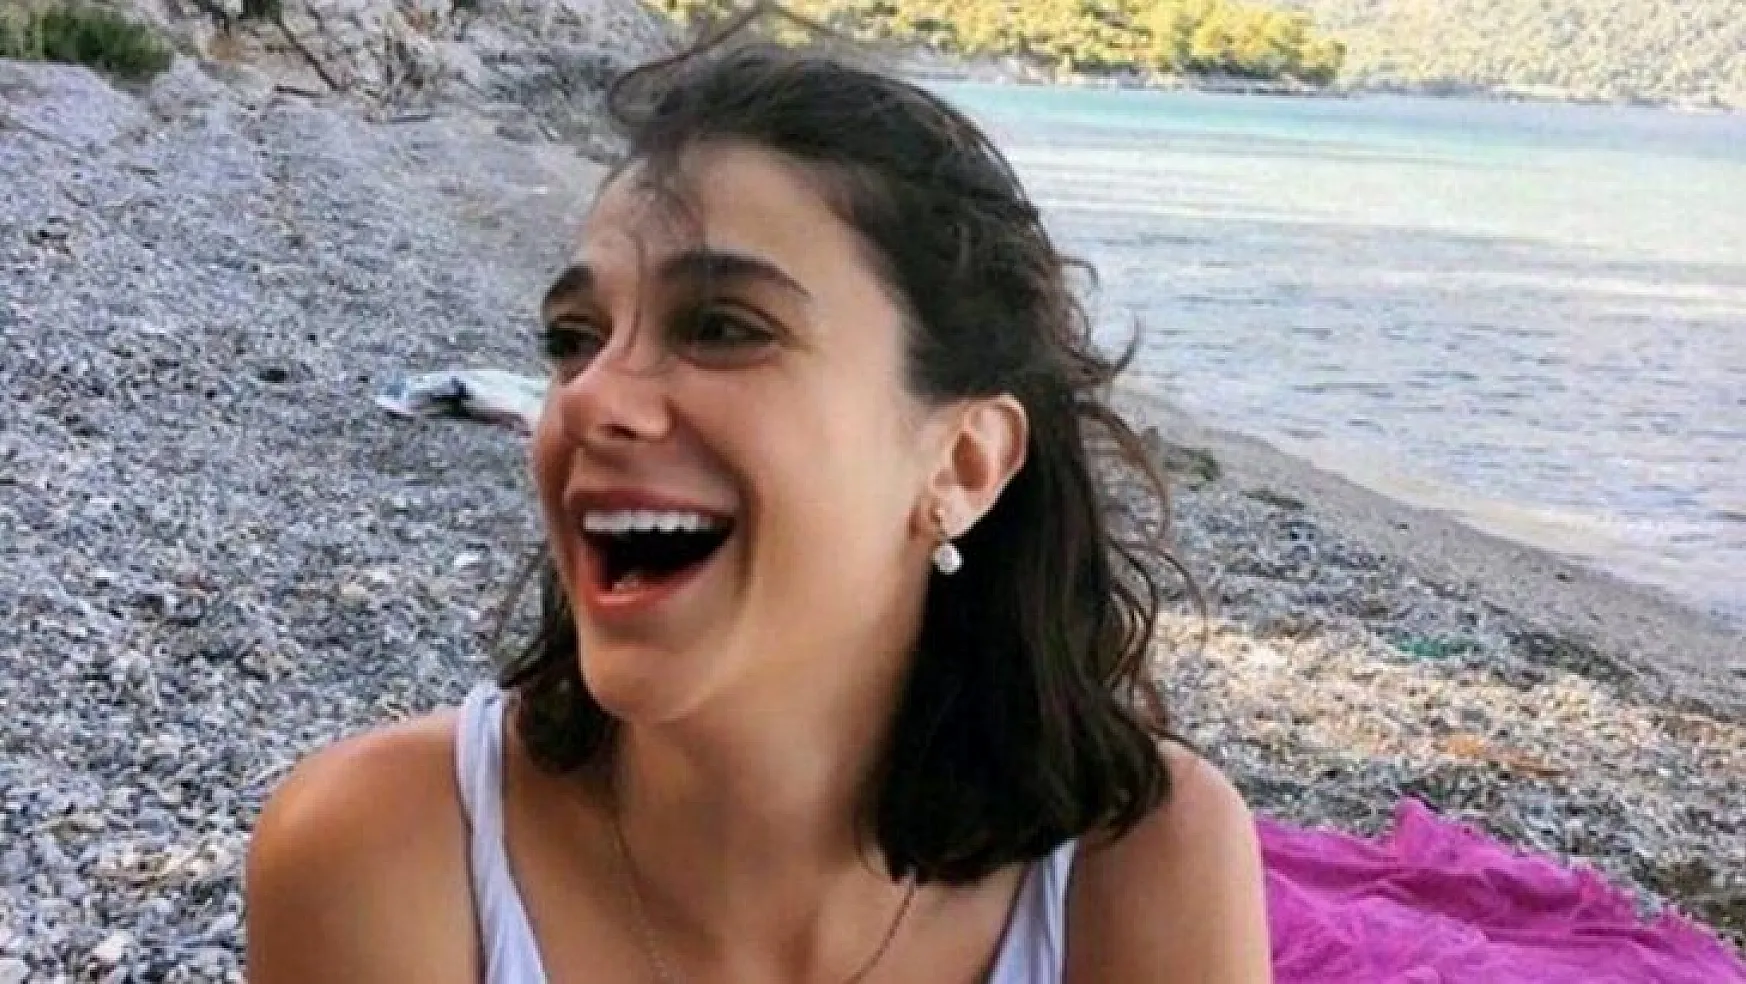 Muğla'da 5 gündür kayıp olan üniversite öğrencisi Pınar Gültekin'in (27) cansız bedeni bulundu.